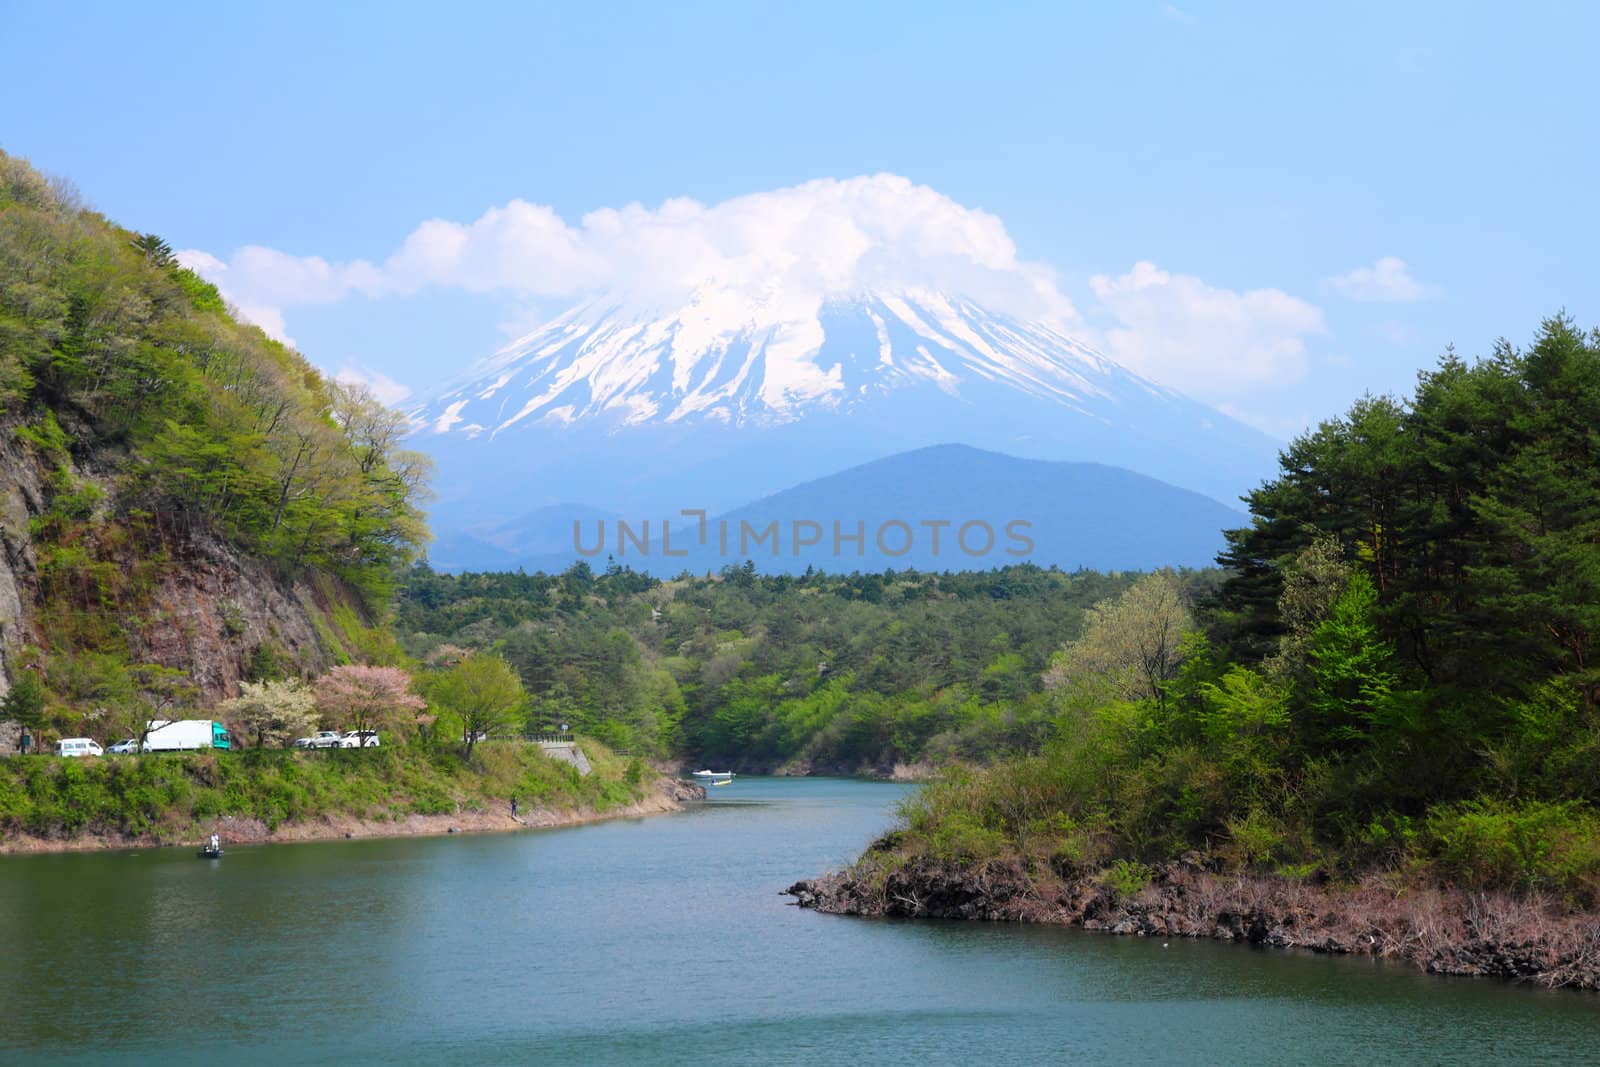 Mount Fuji by tupungato